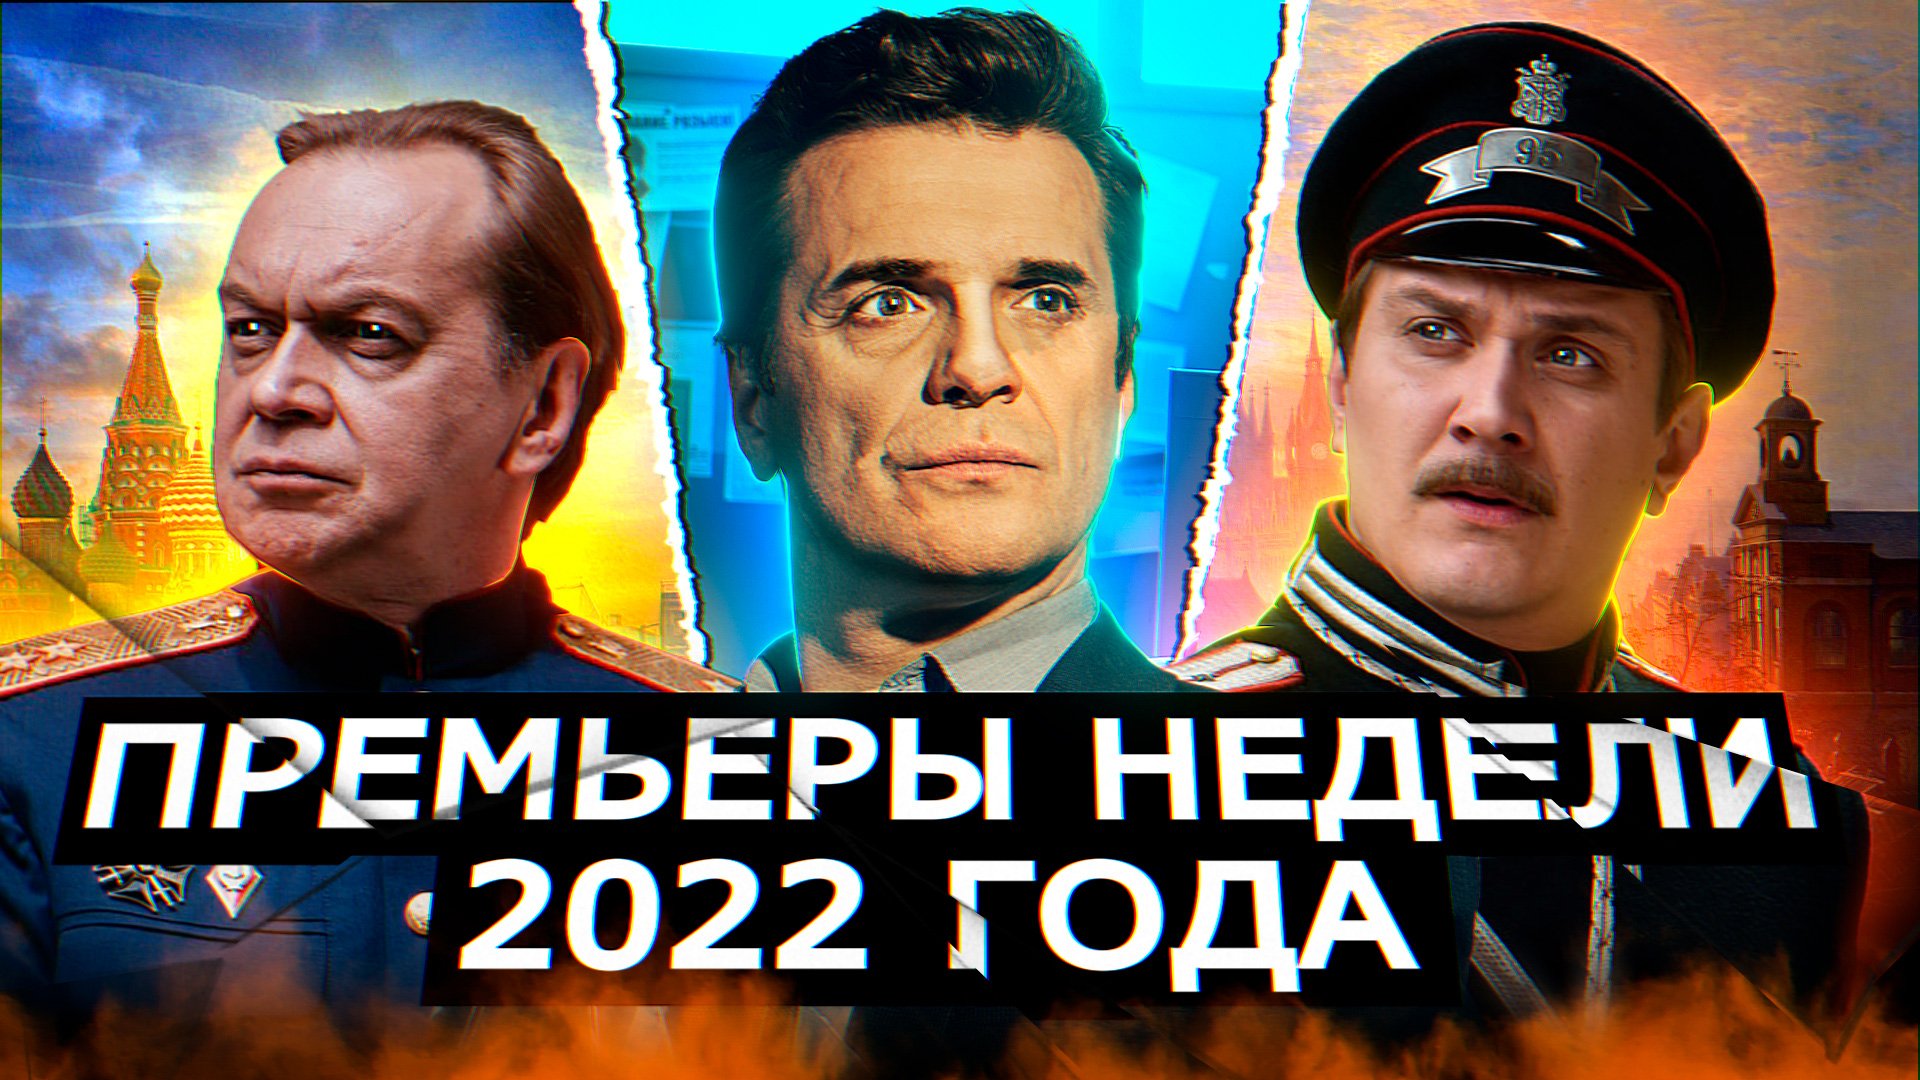 ПРЕМЬЕРЫ НЕДЕЛИ 2022 ГОДА | 8 Новых русских сериалов июля 2022 года